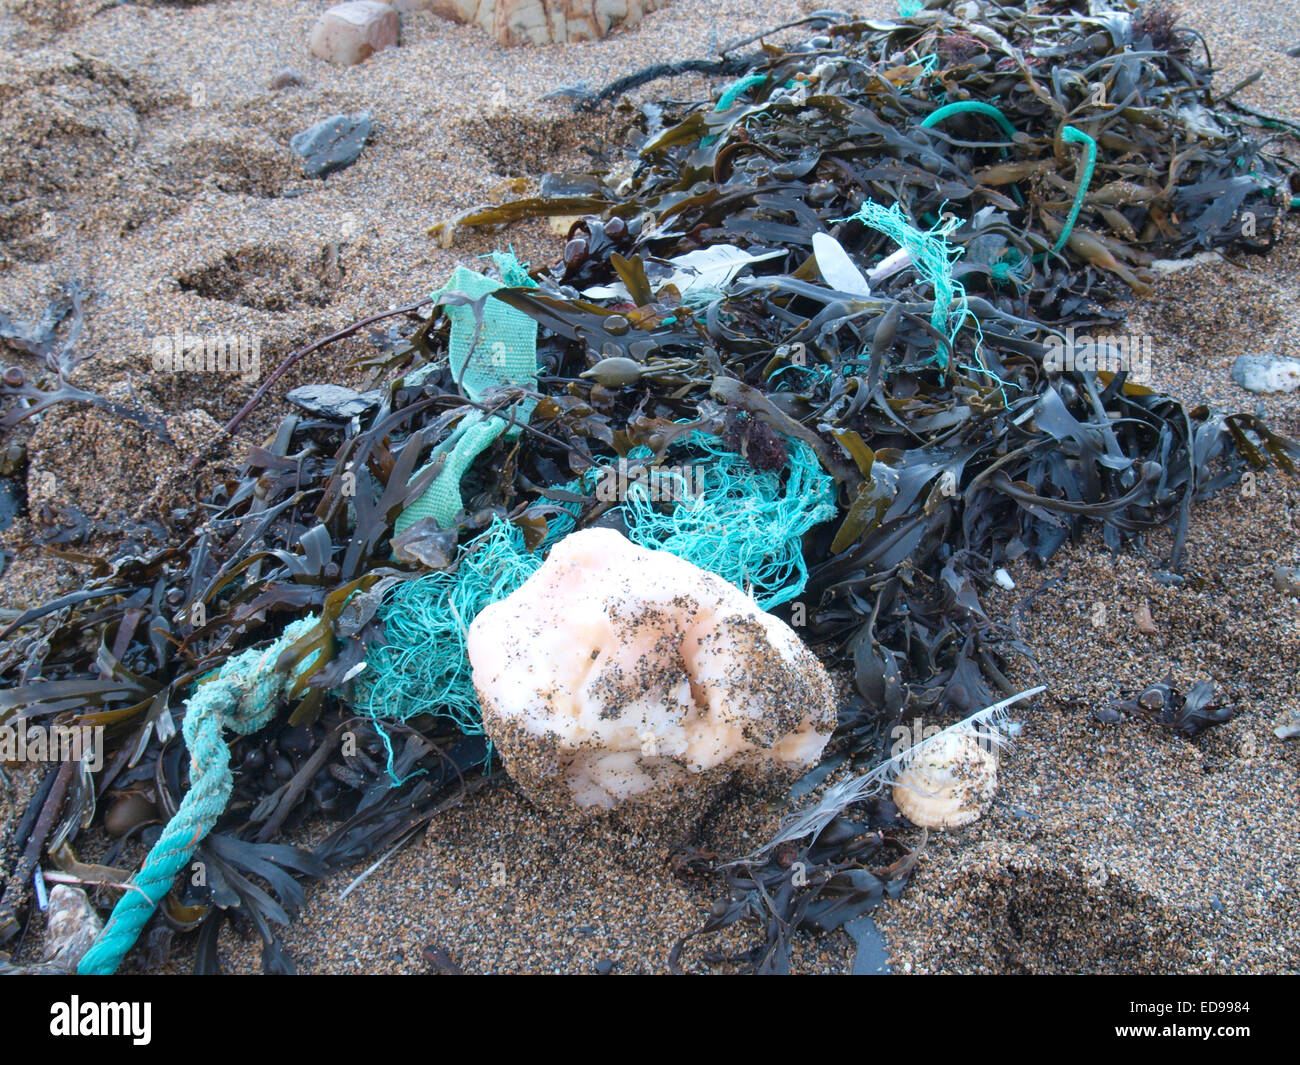 Boule de graisse échouée sur la plage, Widemouth Bay, Bude, Cornwall, UK Banque D'Images